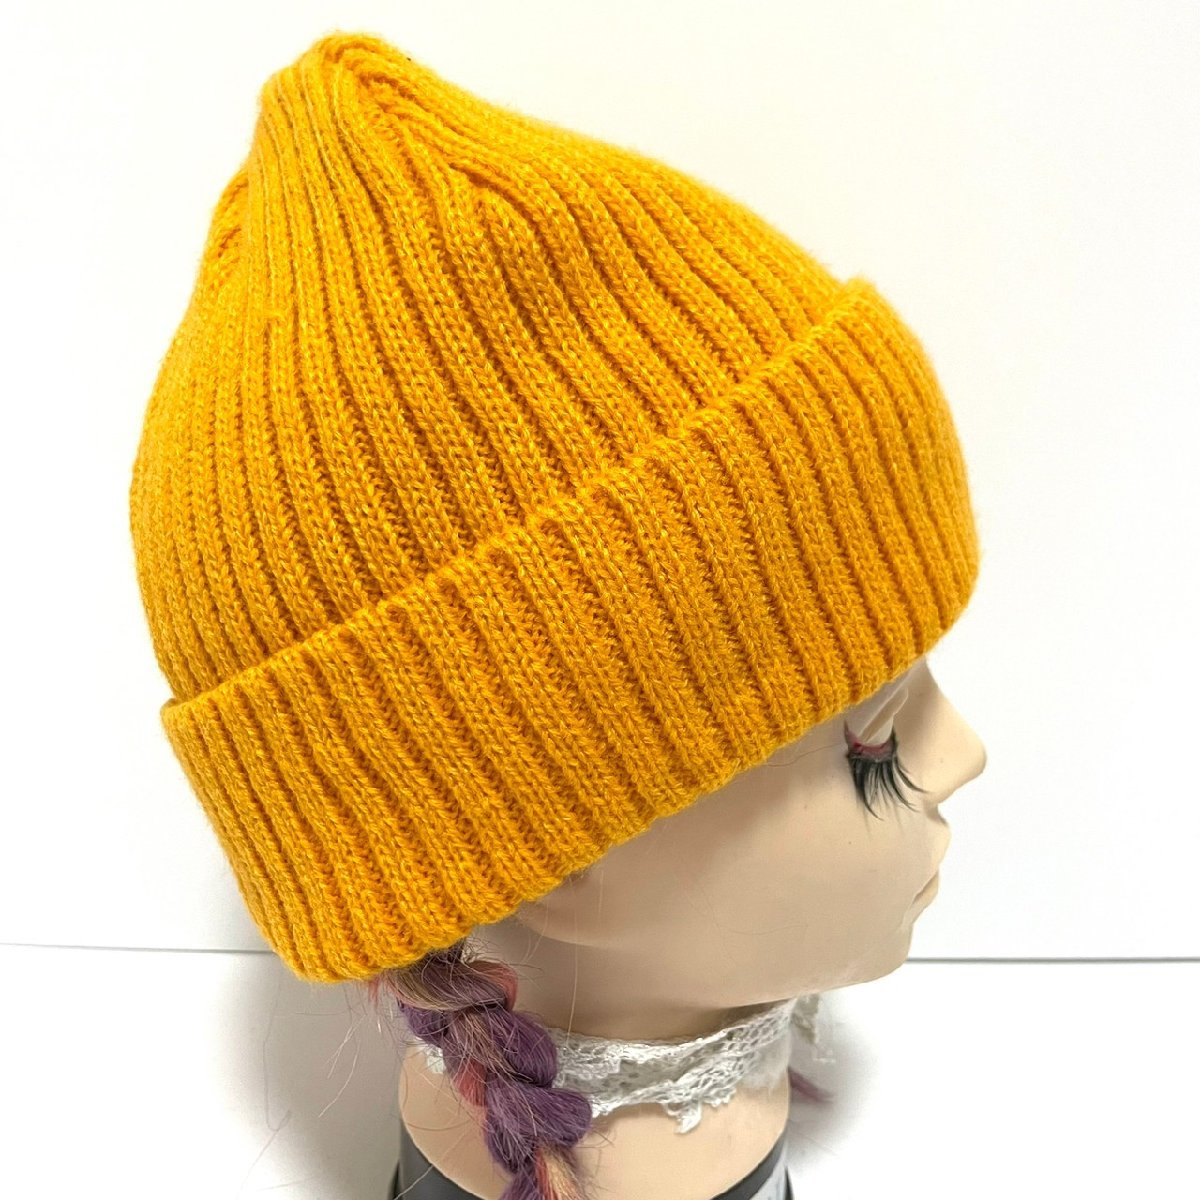 (^w^)b Billabong вязаная шапка шляпа bi колено колпак желтый BILLABONG бирка one отметка простой Surf симпатичный осень-зима б/у одежда C0541EE